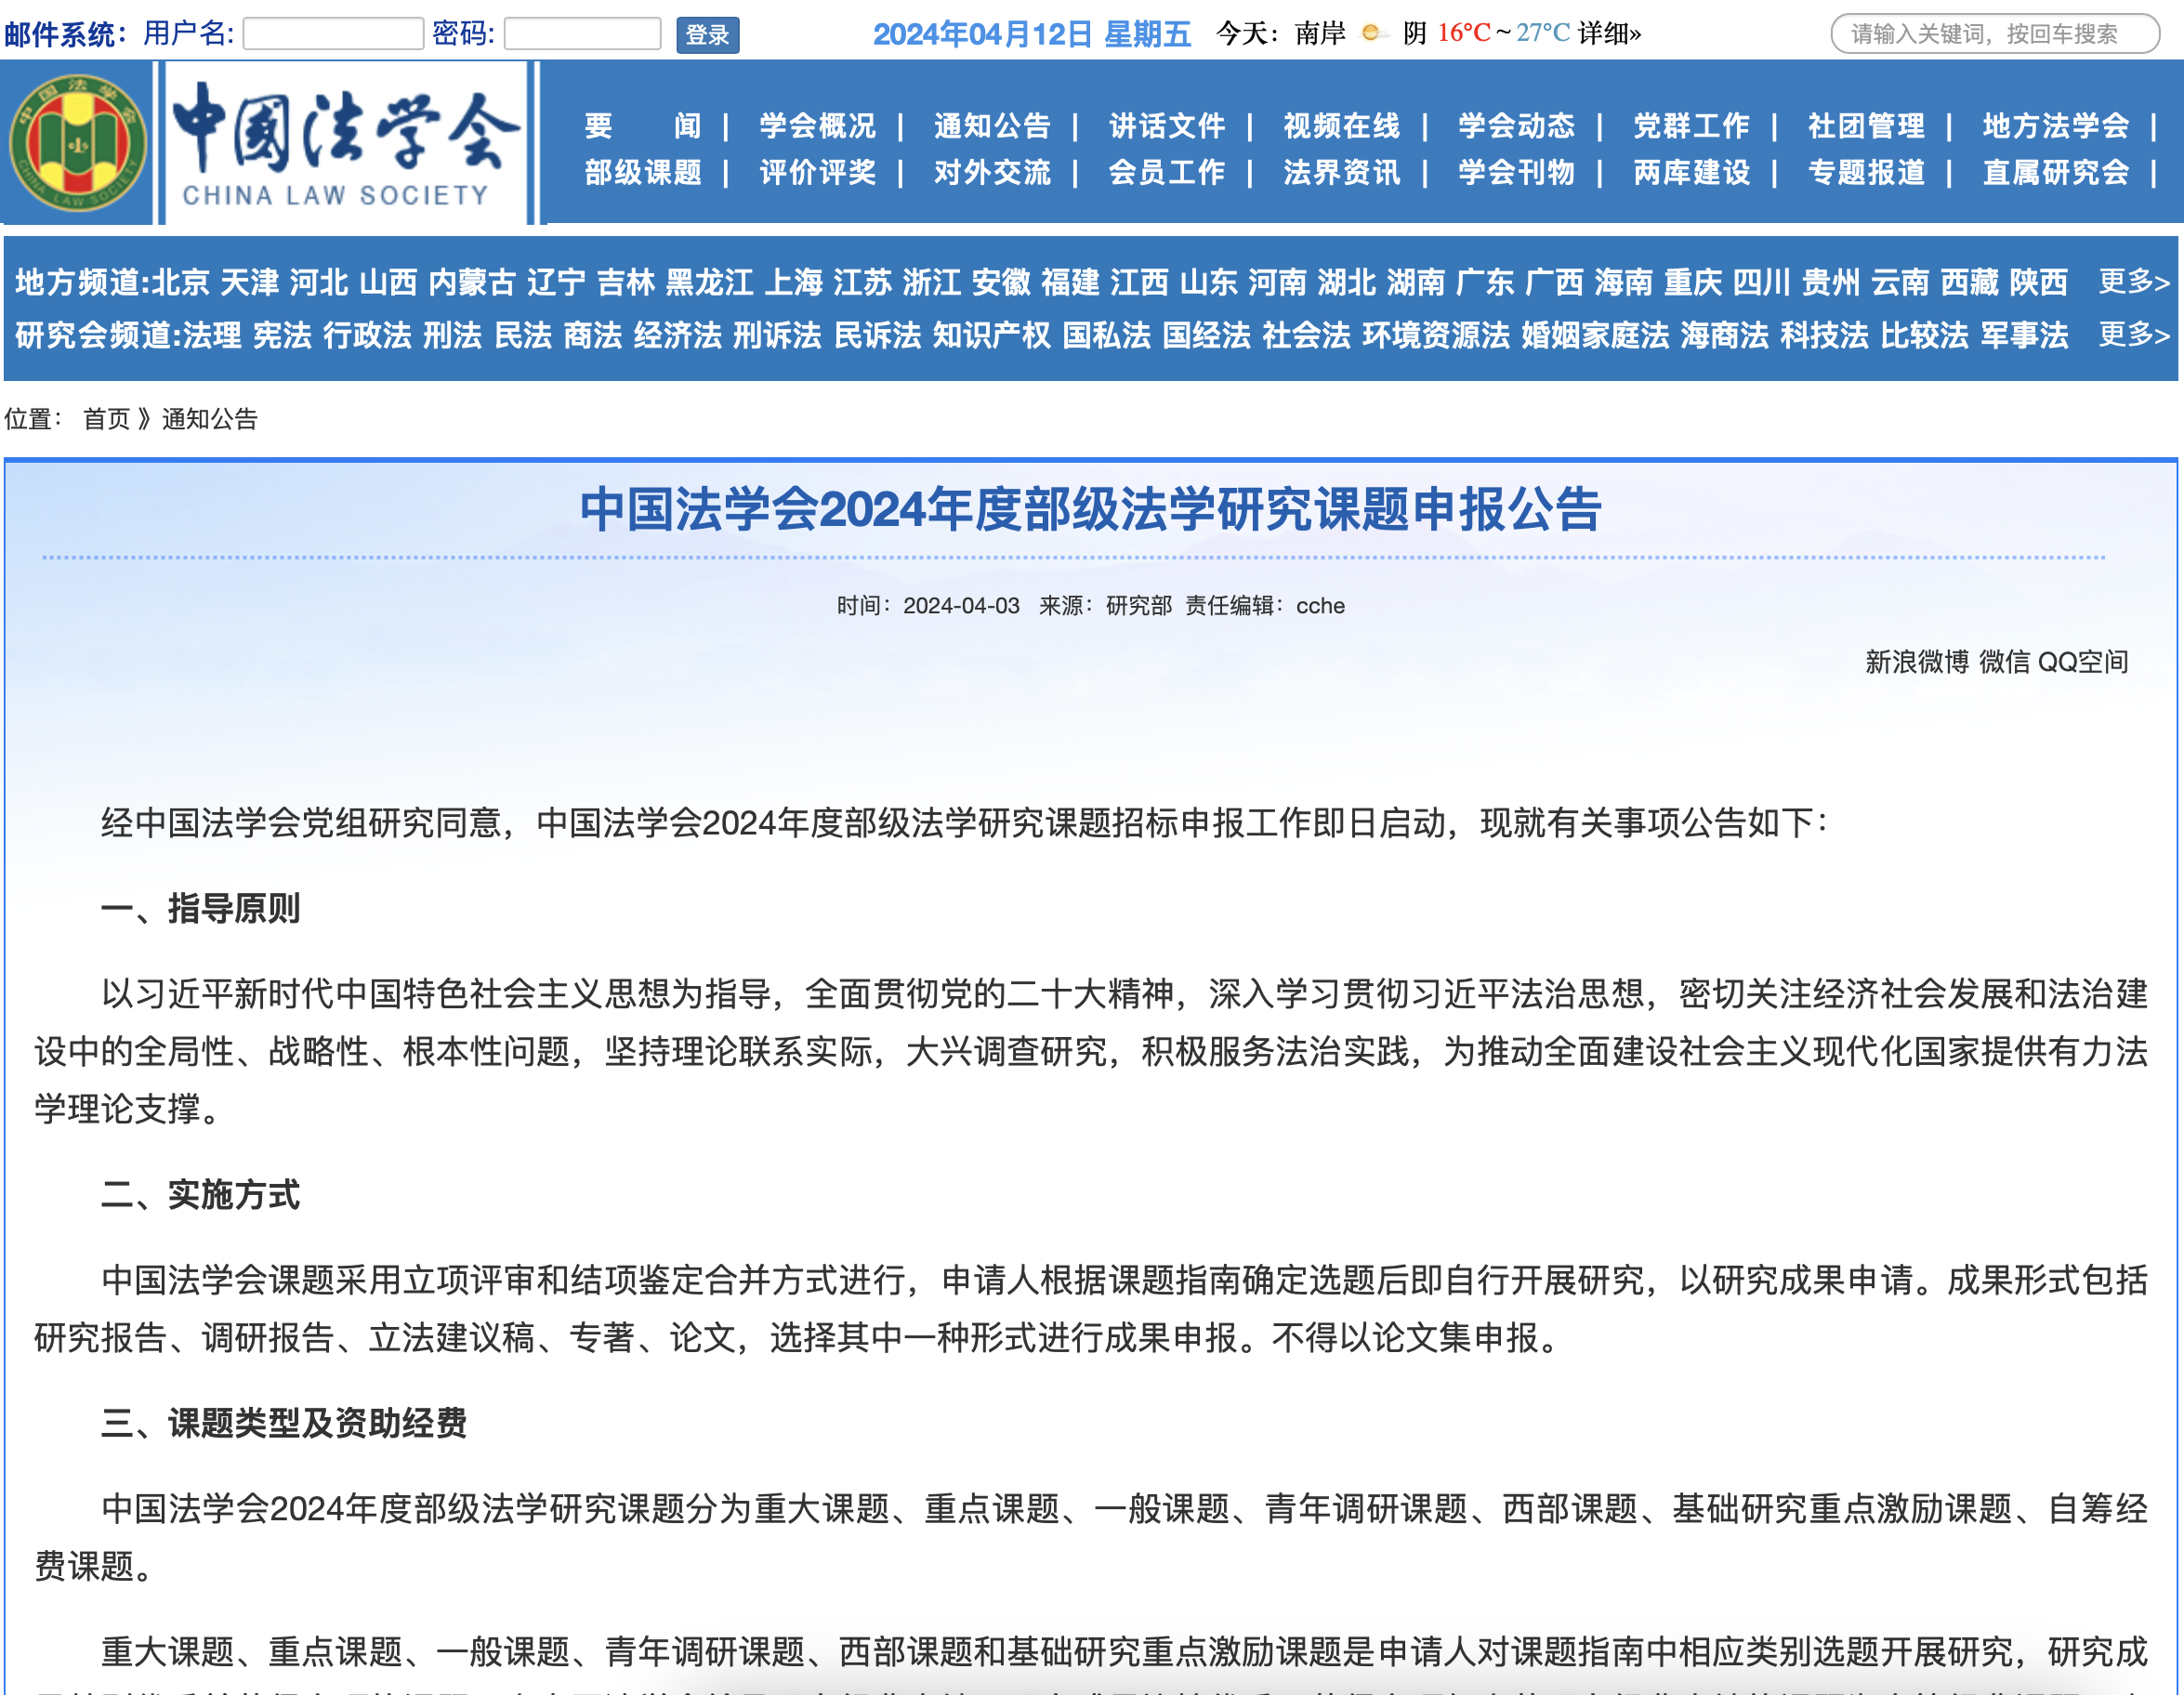 中国法学会2024年度部级法学研究课题申报公告